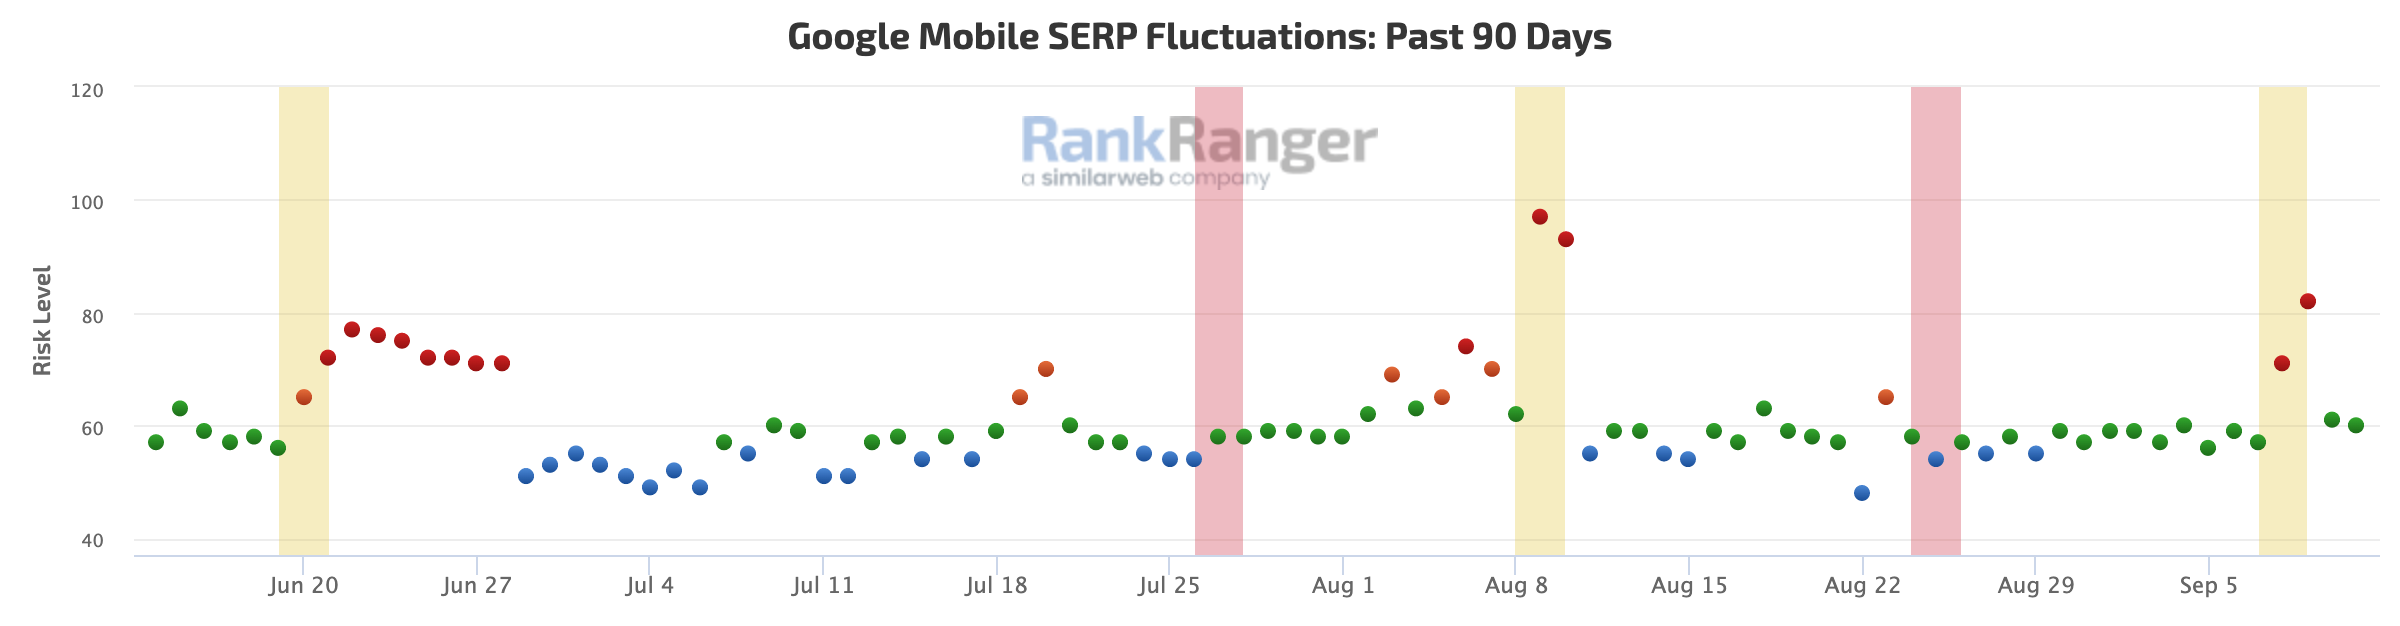 Fluttuazioni delle SERP mobile